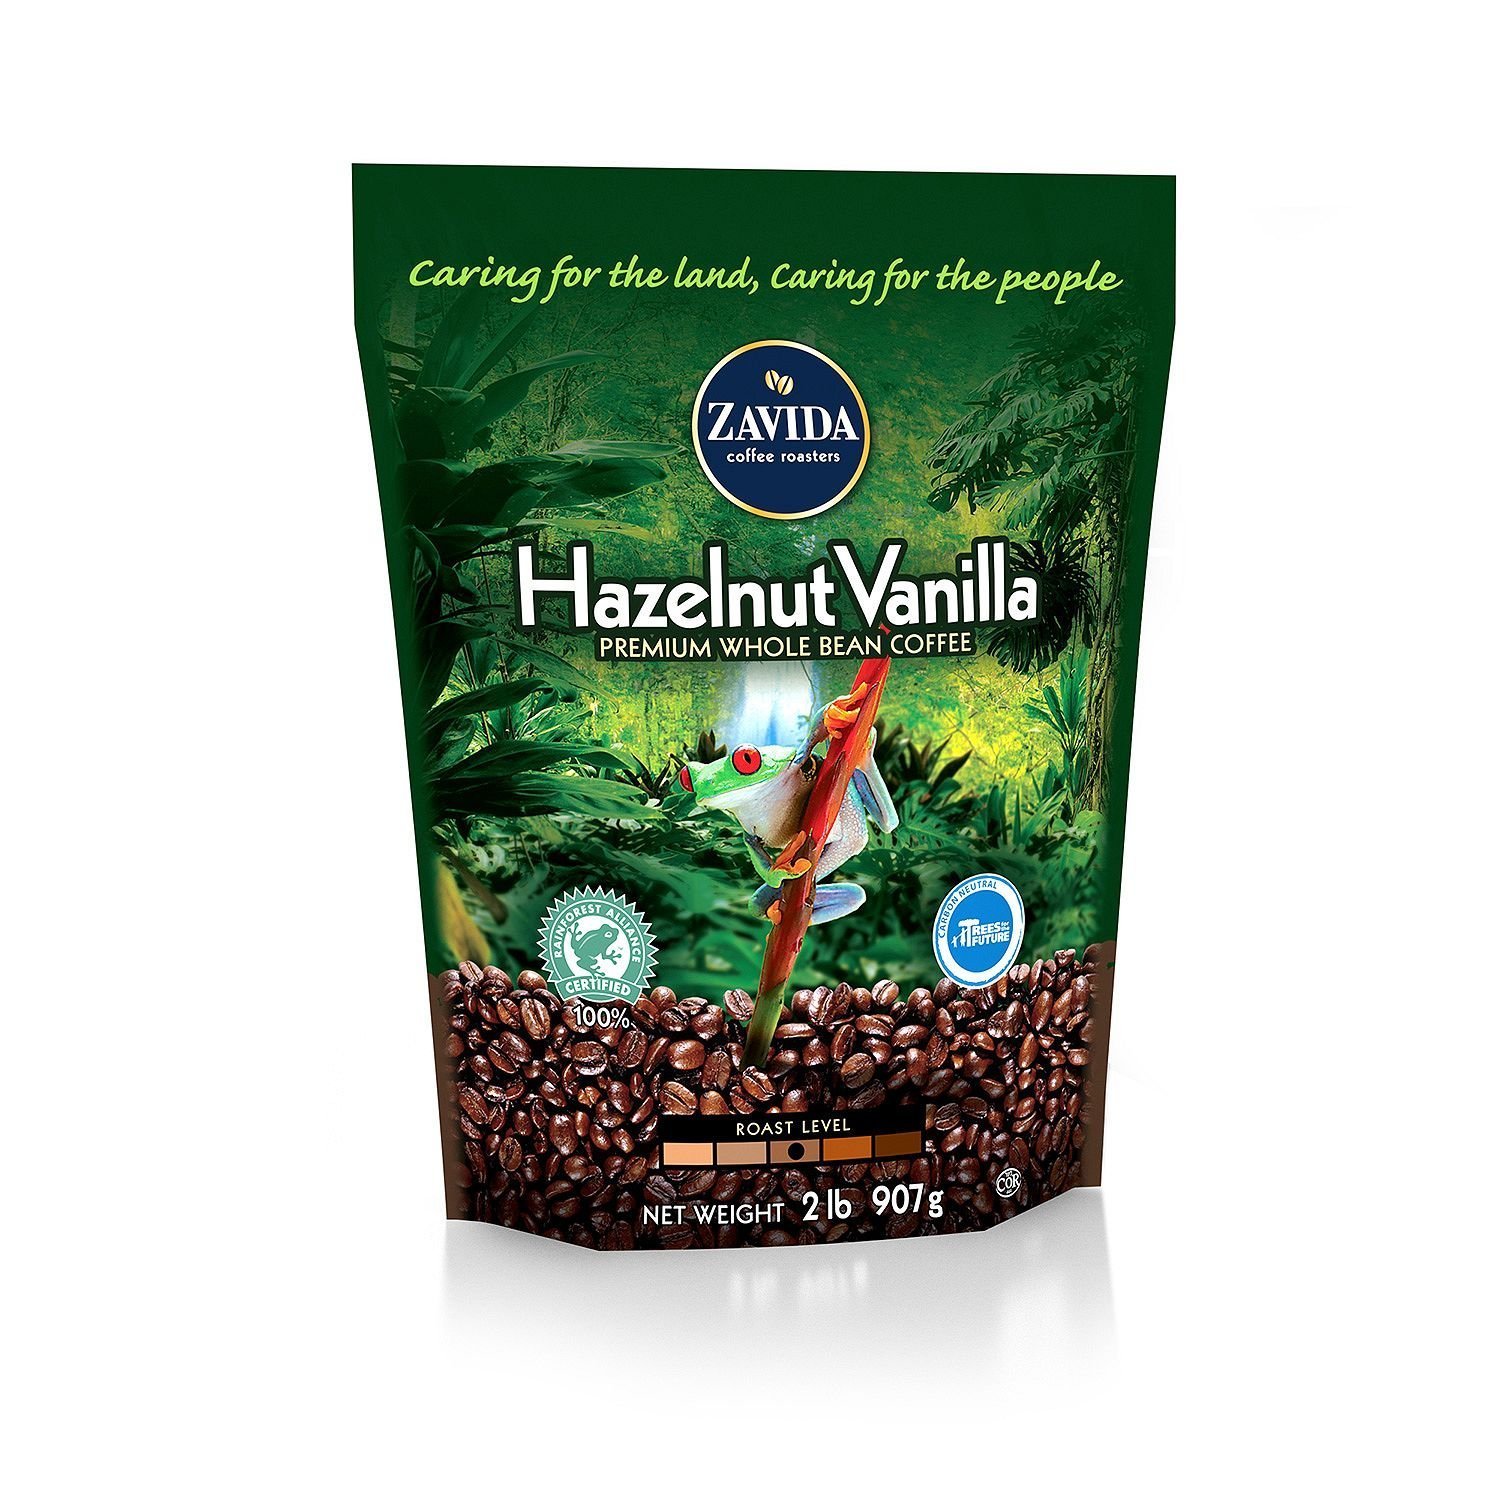 ■訳あり■2,250円引き Zavida Coffee社 Hazelnut Vanilla Whole Bean ザビダコーヒーヘーゼルナッツバニラコーヒー豆907g1袋